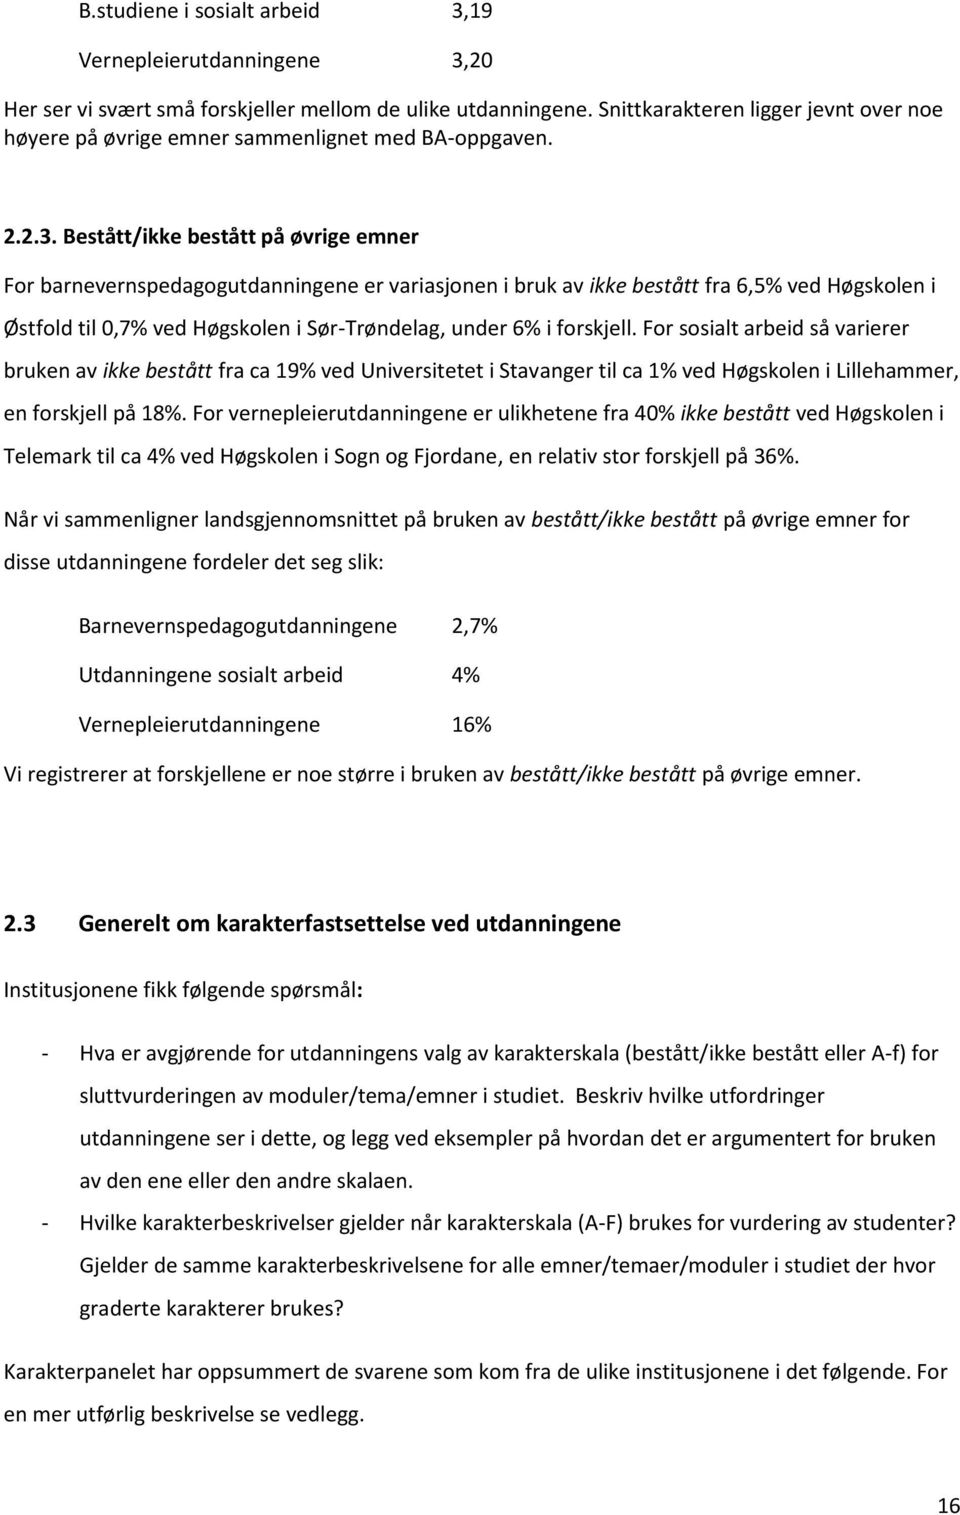 Bestått/ikke bestått på øvrige emner For barnevernspedagogutdanningene er variasjonen i bruk av ikke bestått fra 6,5% ved Høgskolen i Østfold til 0,7% ved Høgskolen i Sør-Trøndelag, under 6% i